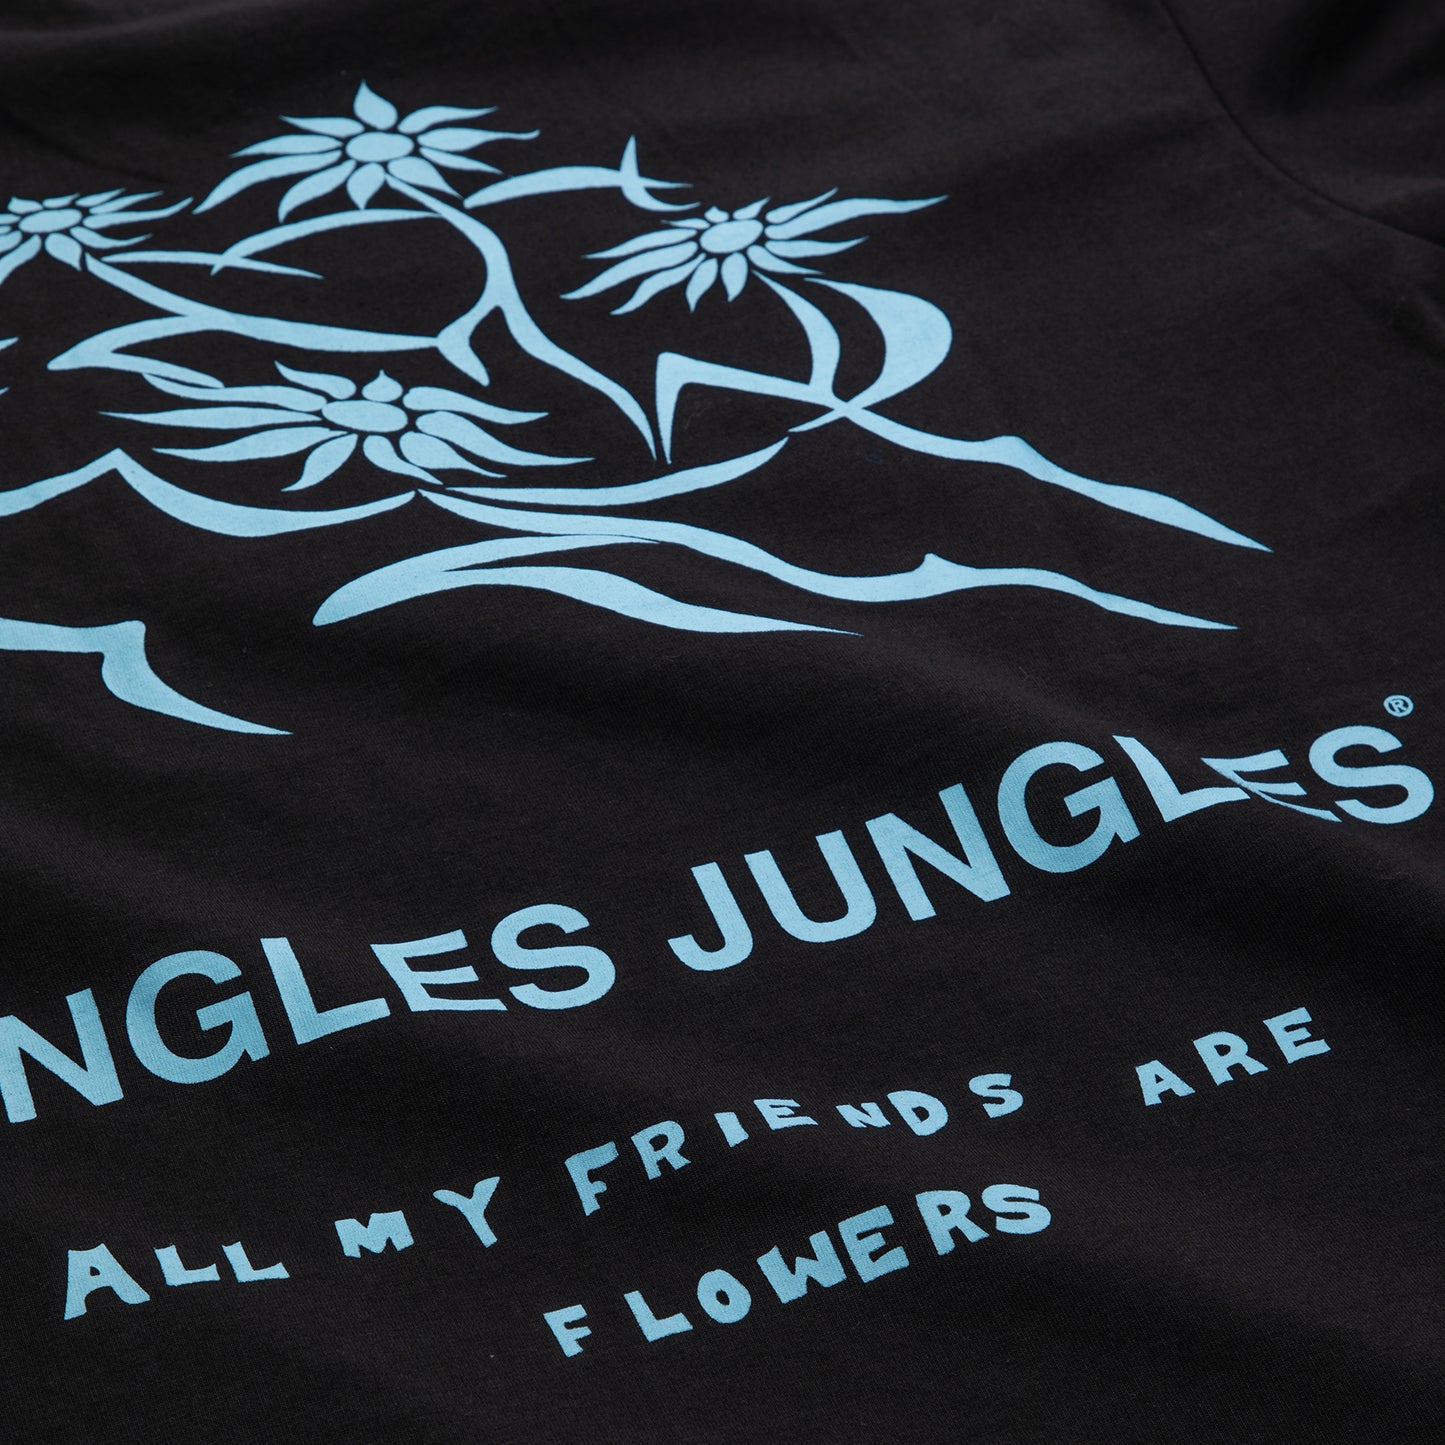 Jungles All My Friends Tee (Black)